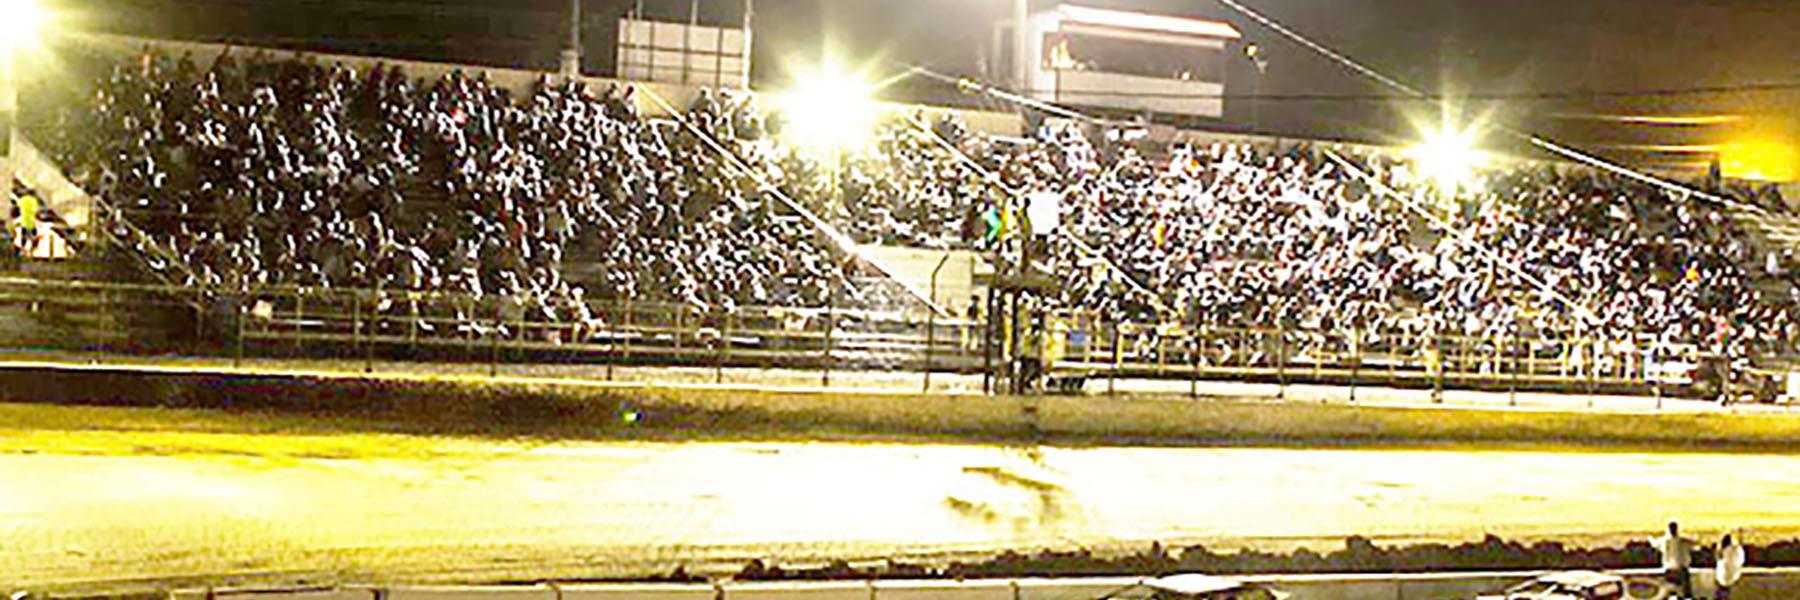 10/9/2021 - Tri-State Speedway